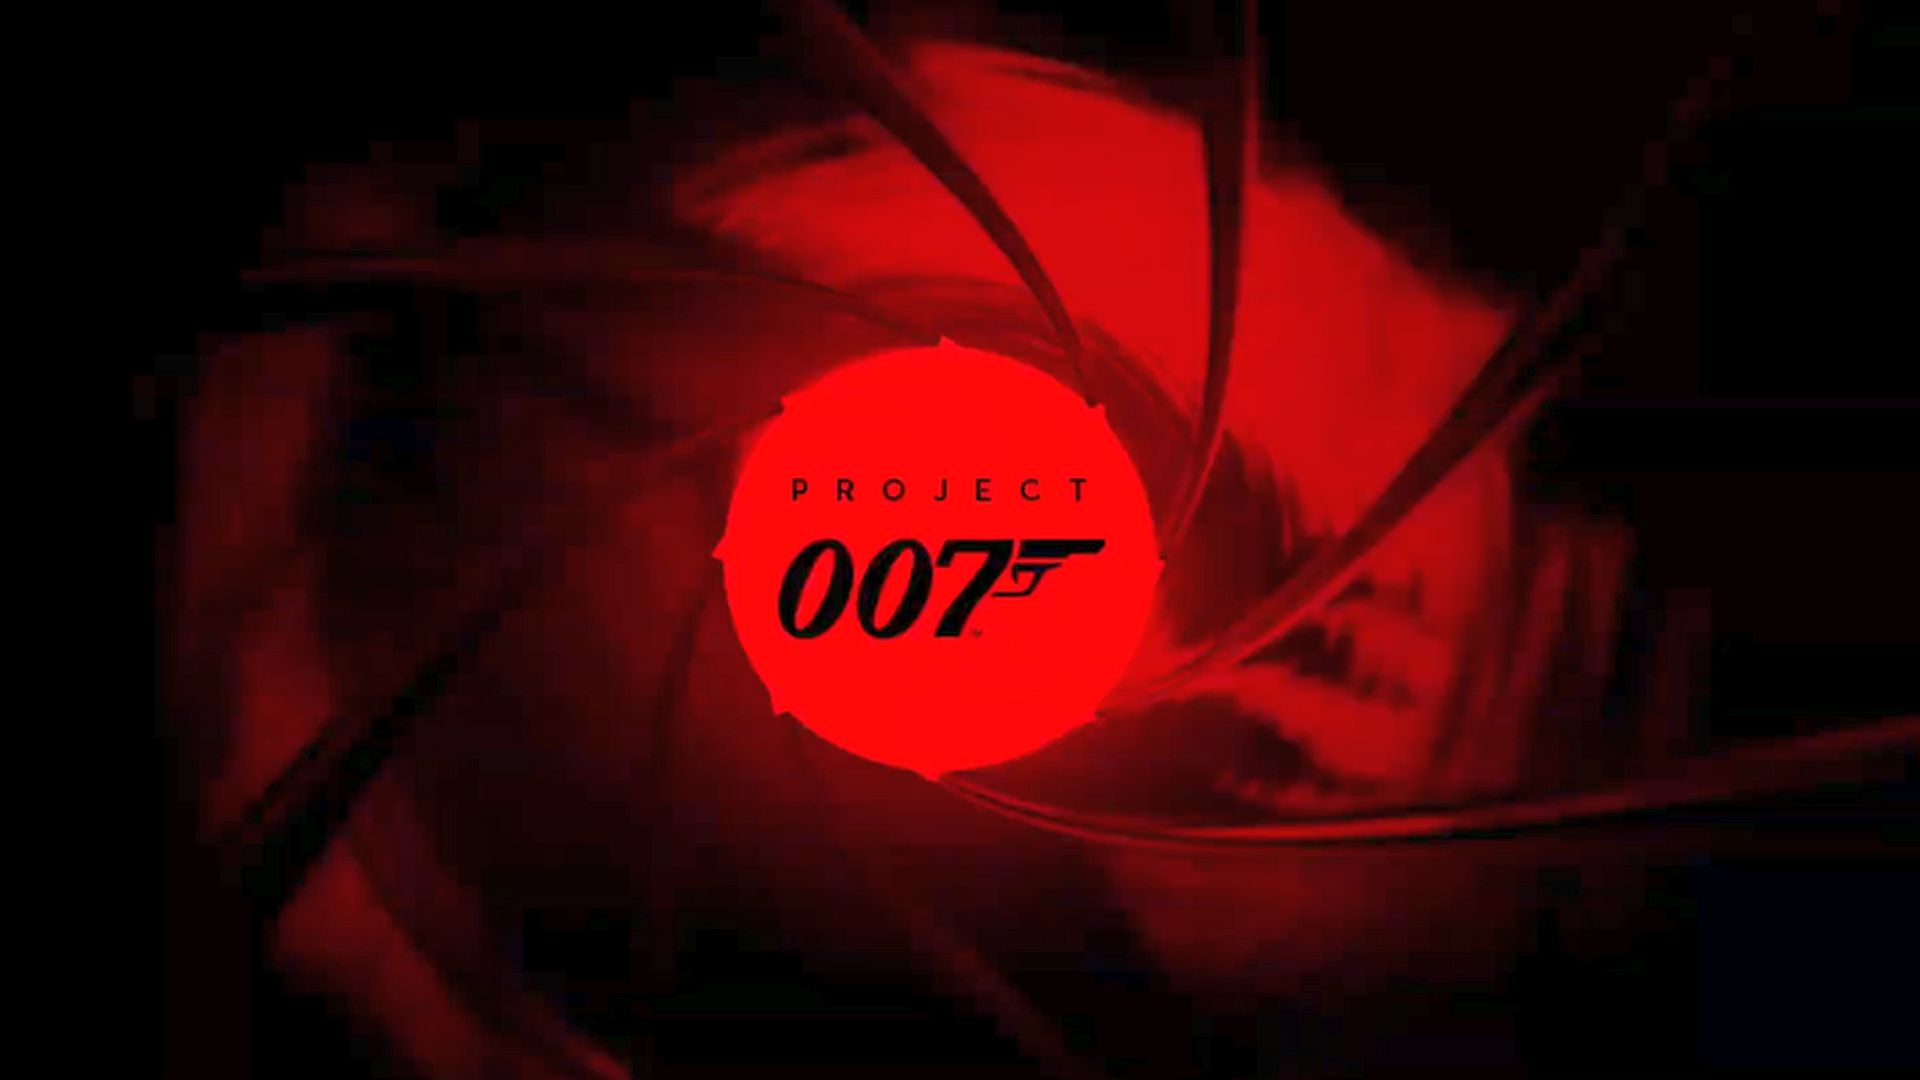 Проект 007: предположения о дате выхода, трейлер и многое другое